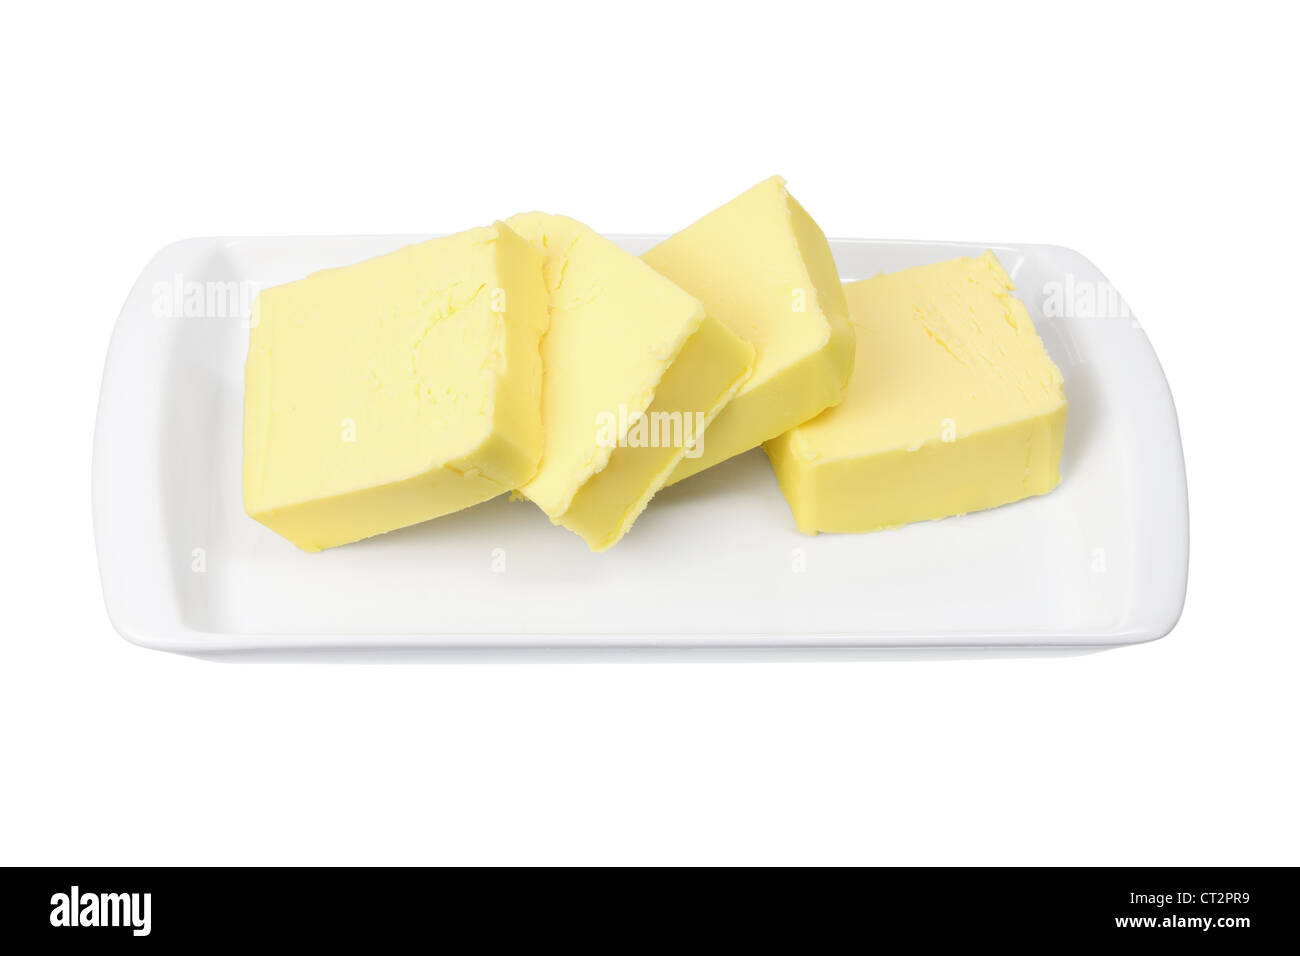 Rebanadas de mantequilla en la placa Foto de stock